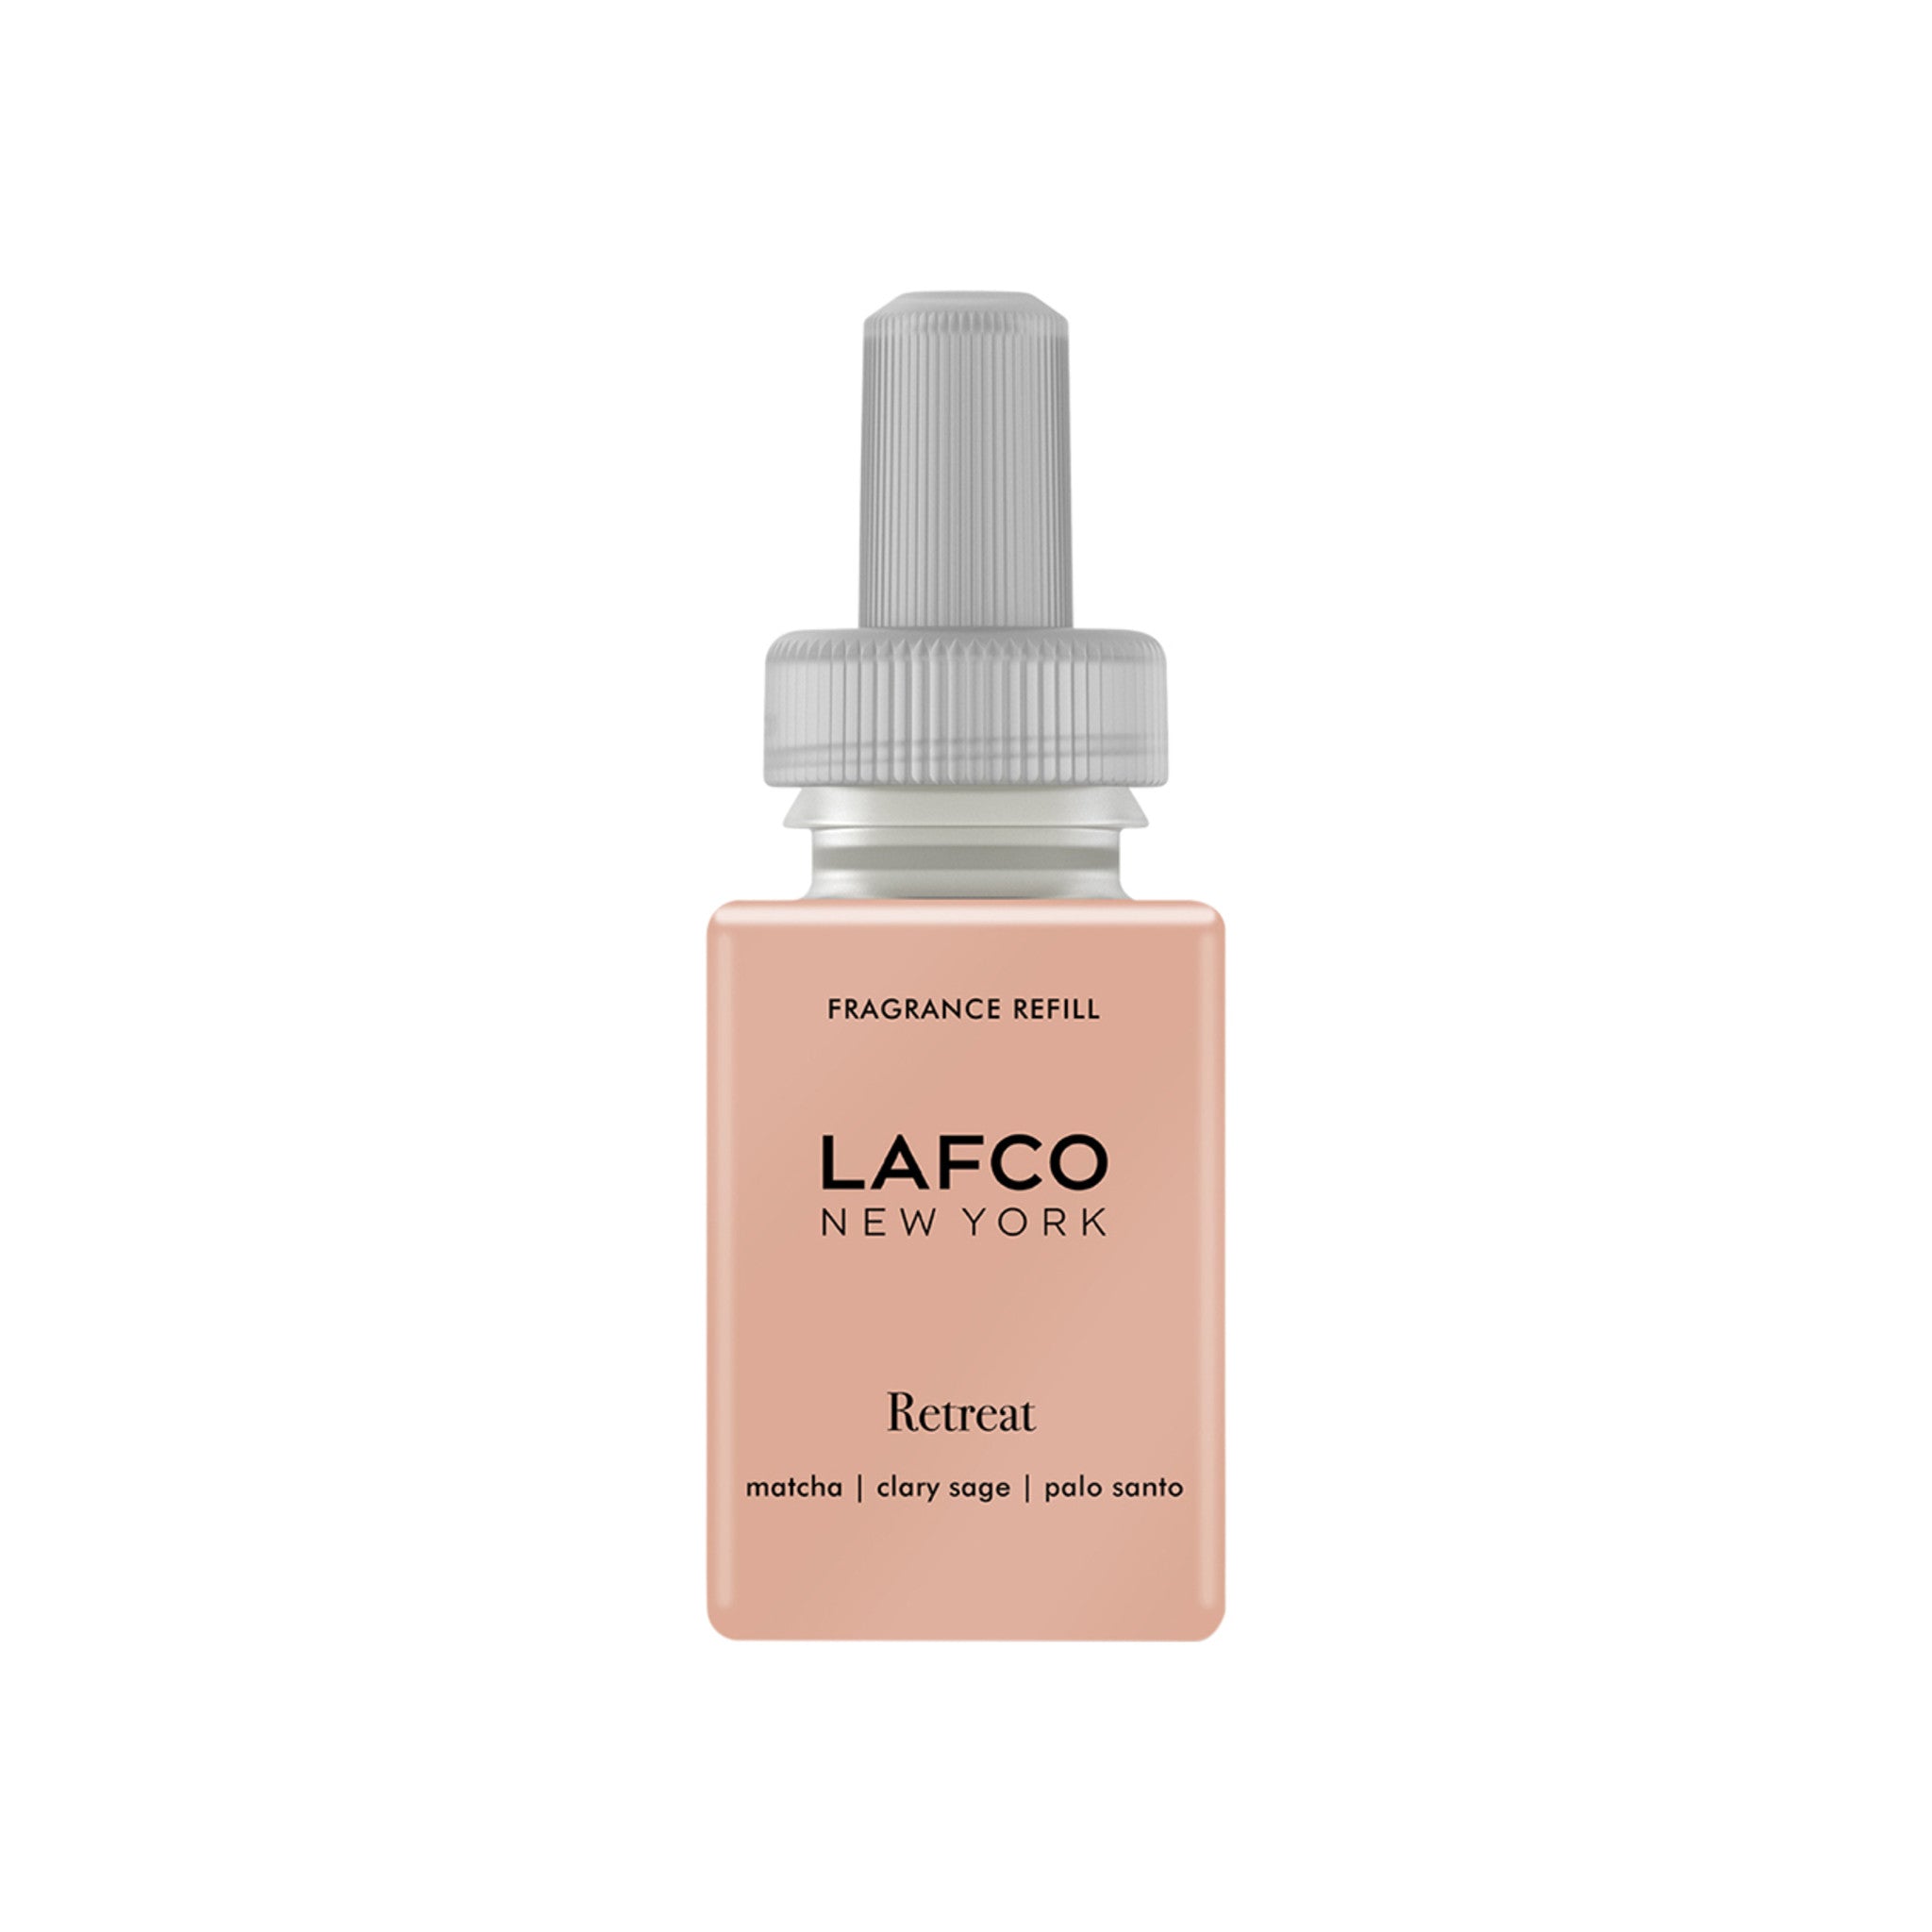 Lafco Pura Retreat Fragrance Refill main image.